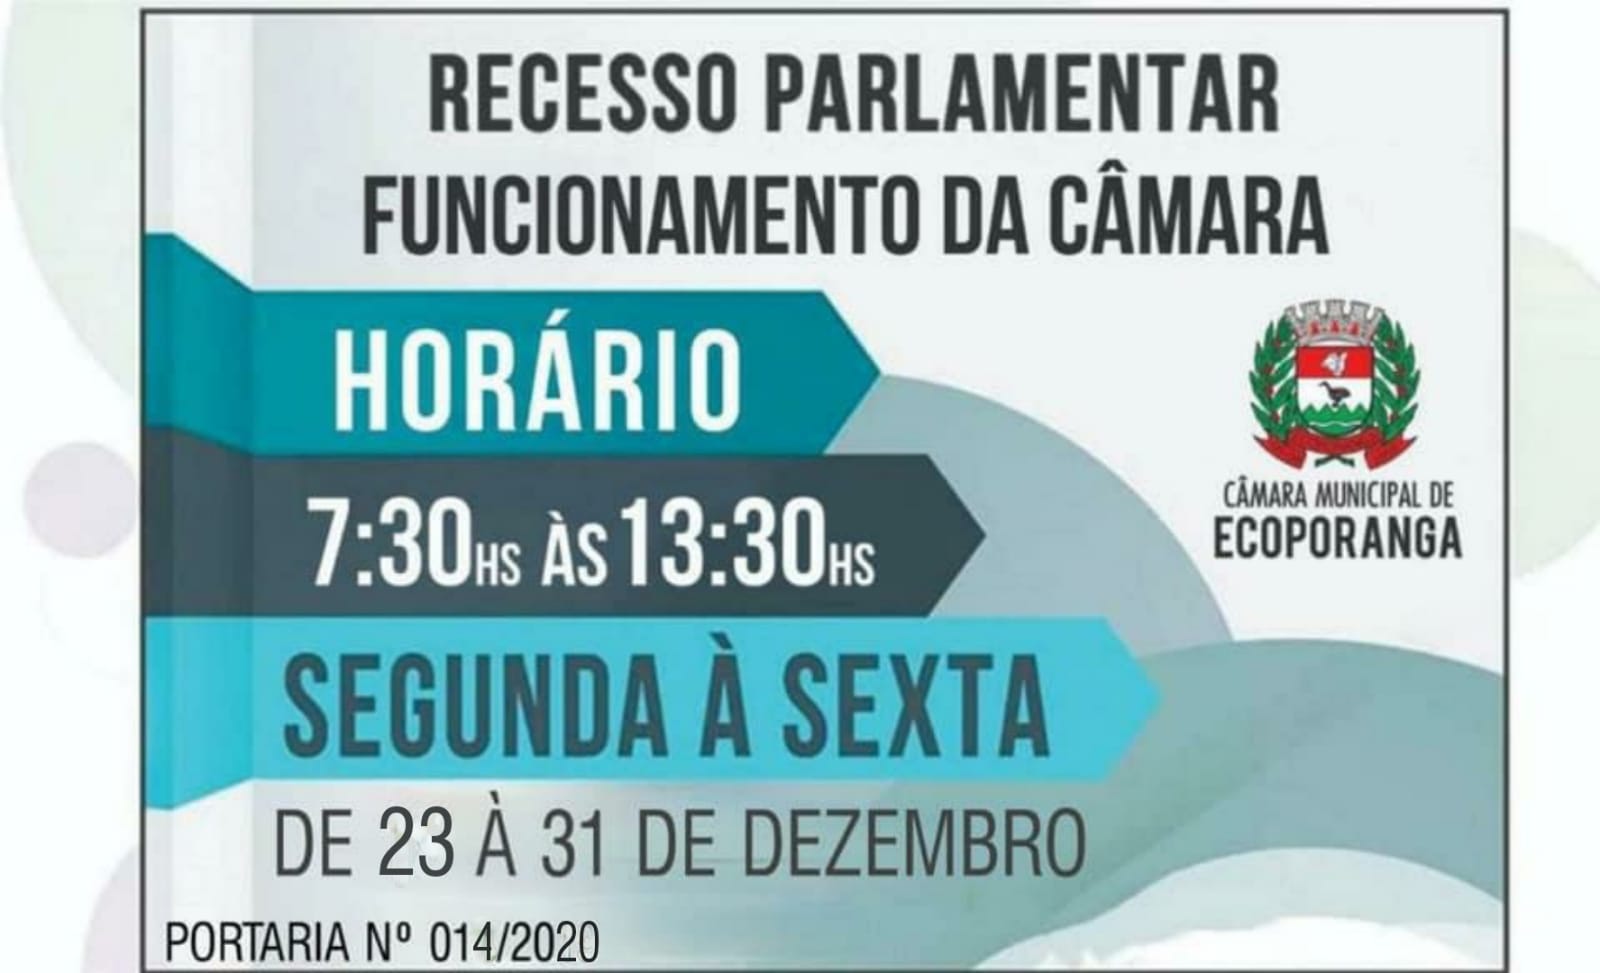 O horário de funcionamento da Câmara Municipal de Ecoporanga/ES no período de 23 a 31 de Dezembro de 2020 será das 07:30 hrs às 13:30 hrs, conforme disposto na portaria nº 014/2020 